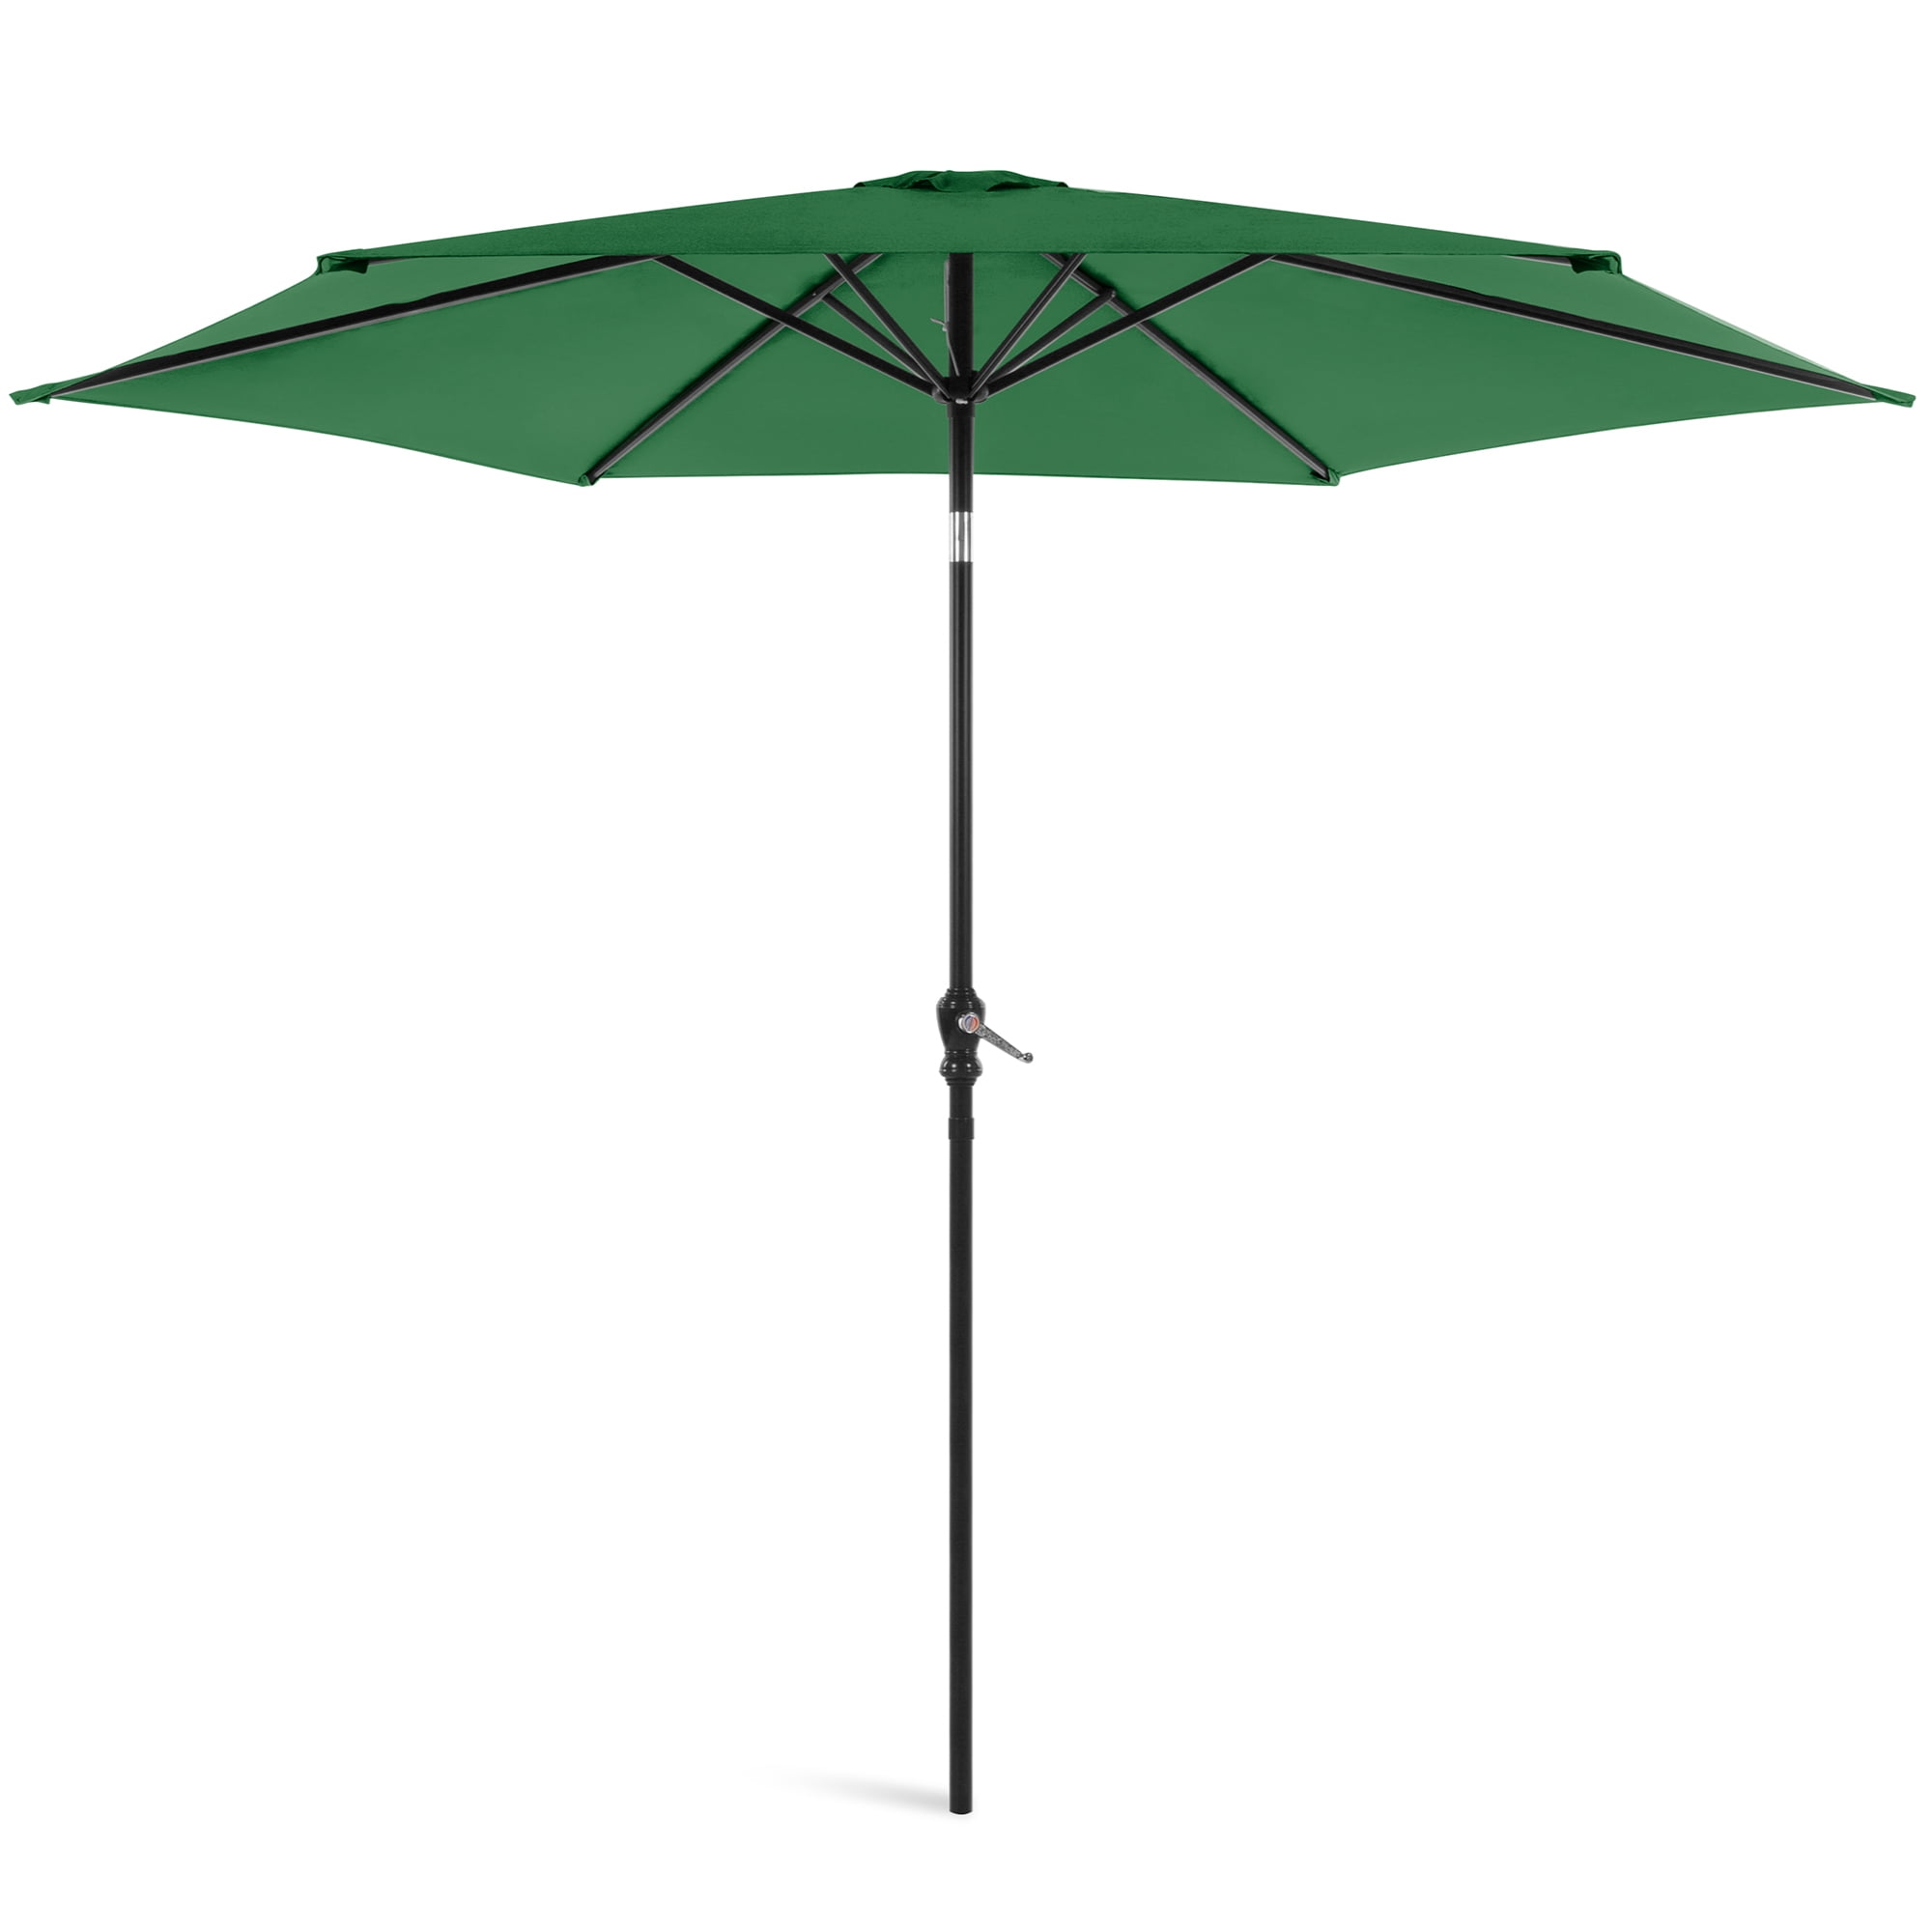 VEGOND Patio Umbrella 9FT Table Umbrella Outdoor Market Umbrella with Tilt Adjustment and Crank Lift System Green 